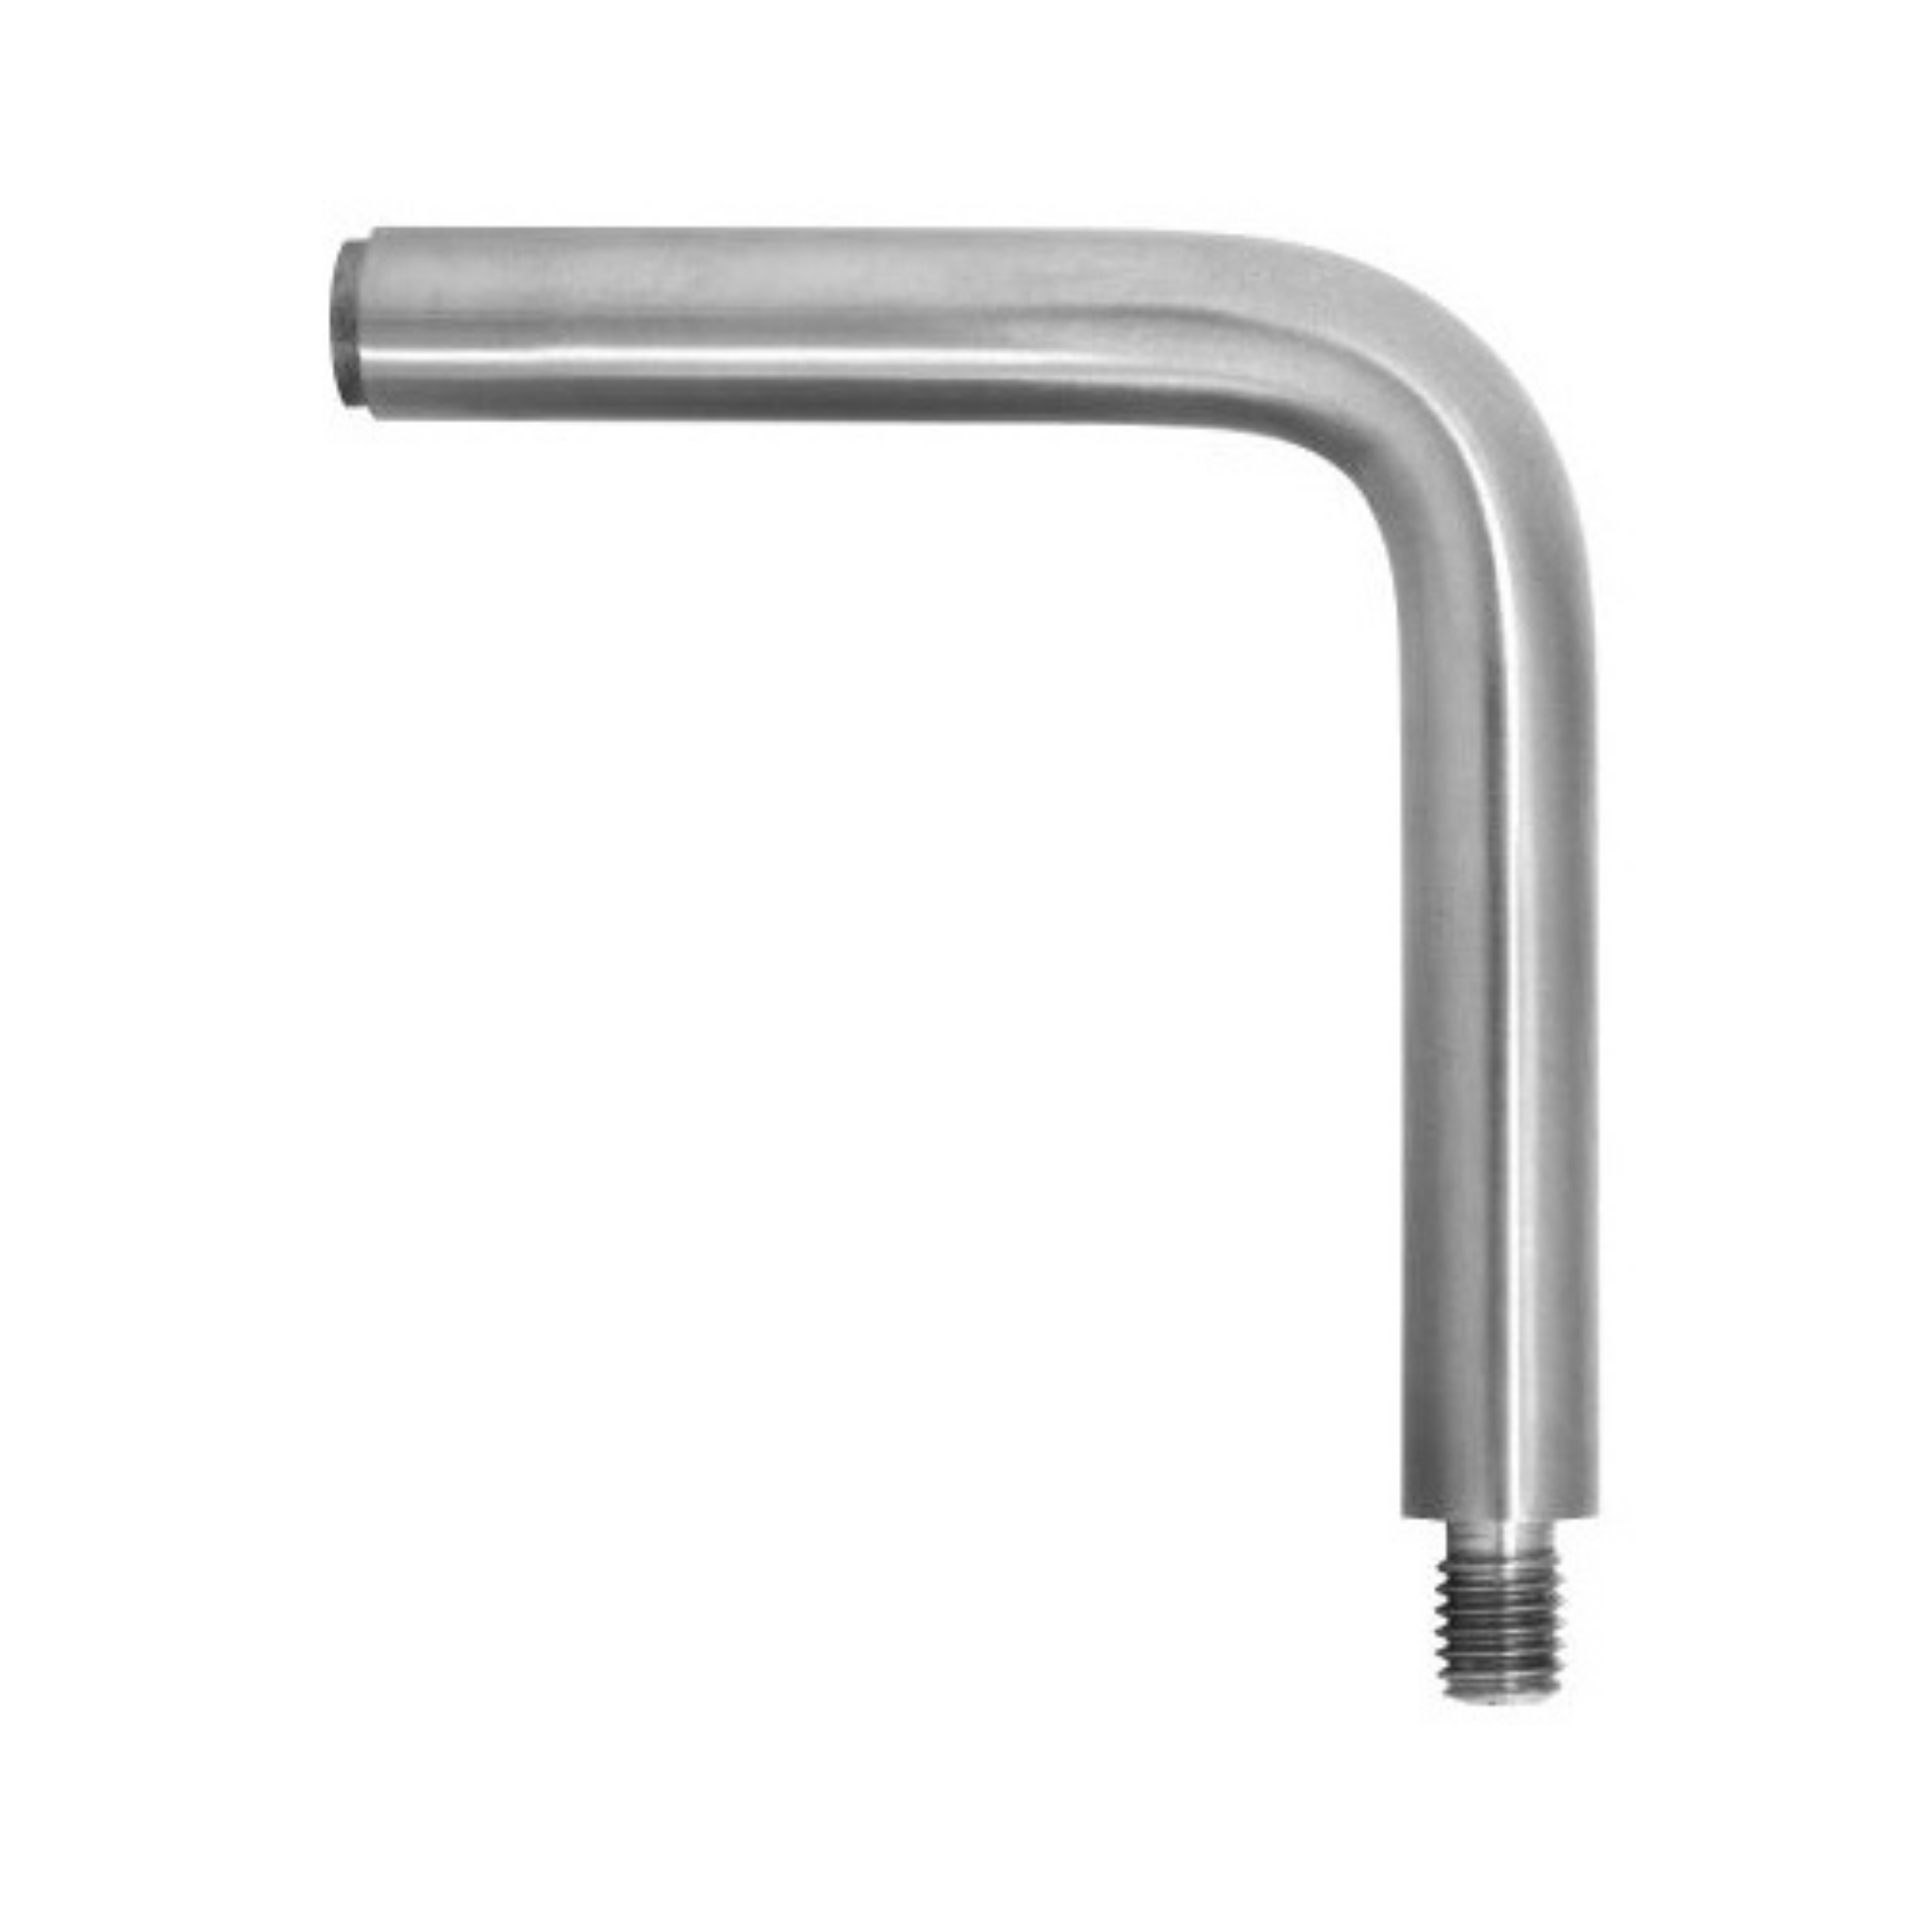 Handrail fitting (90º) - StroFIX